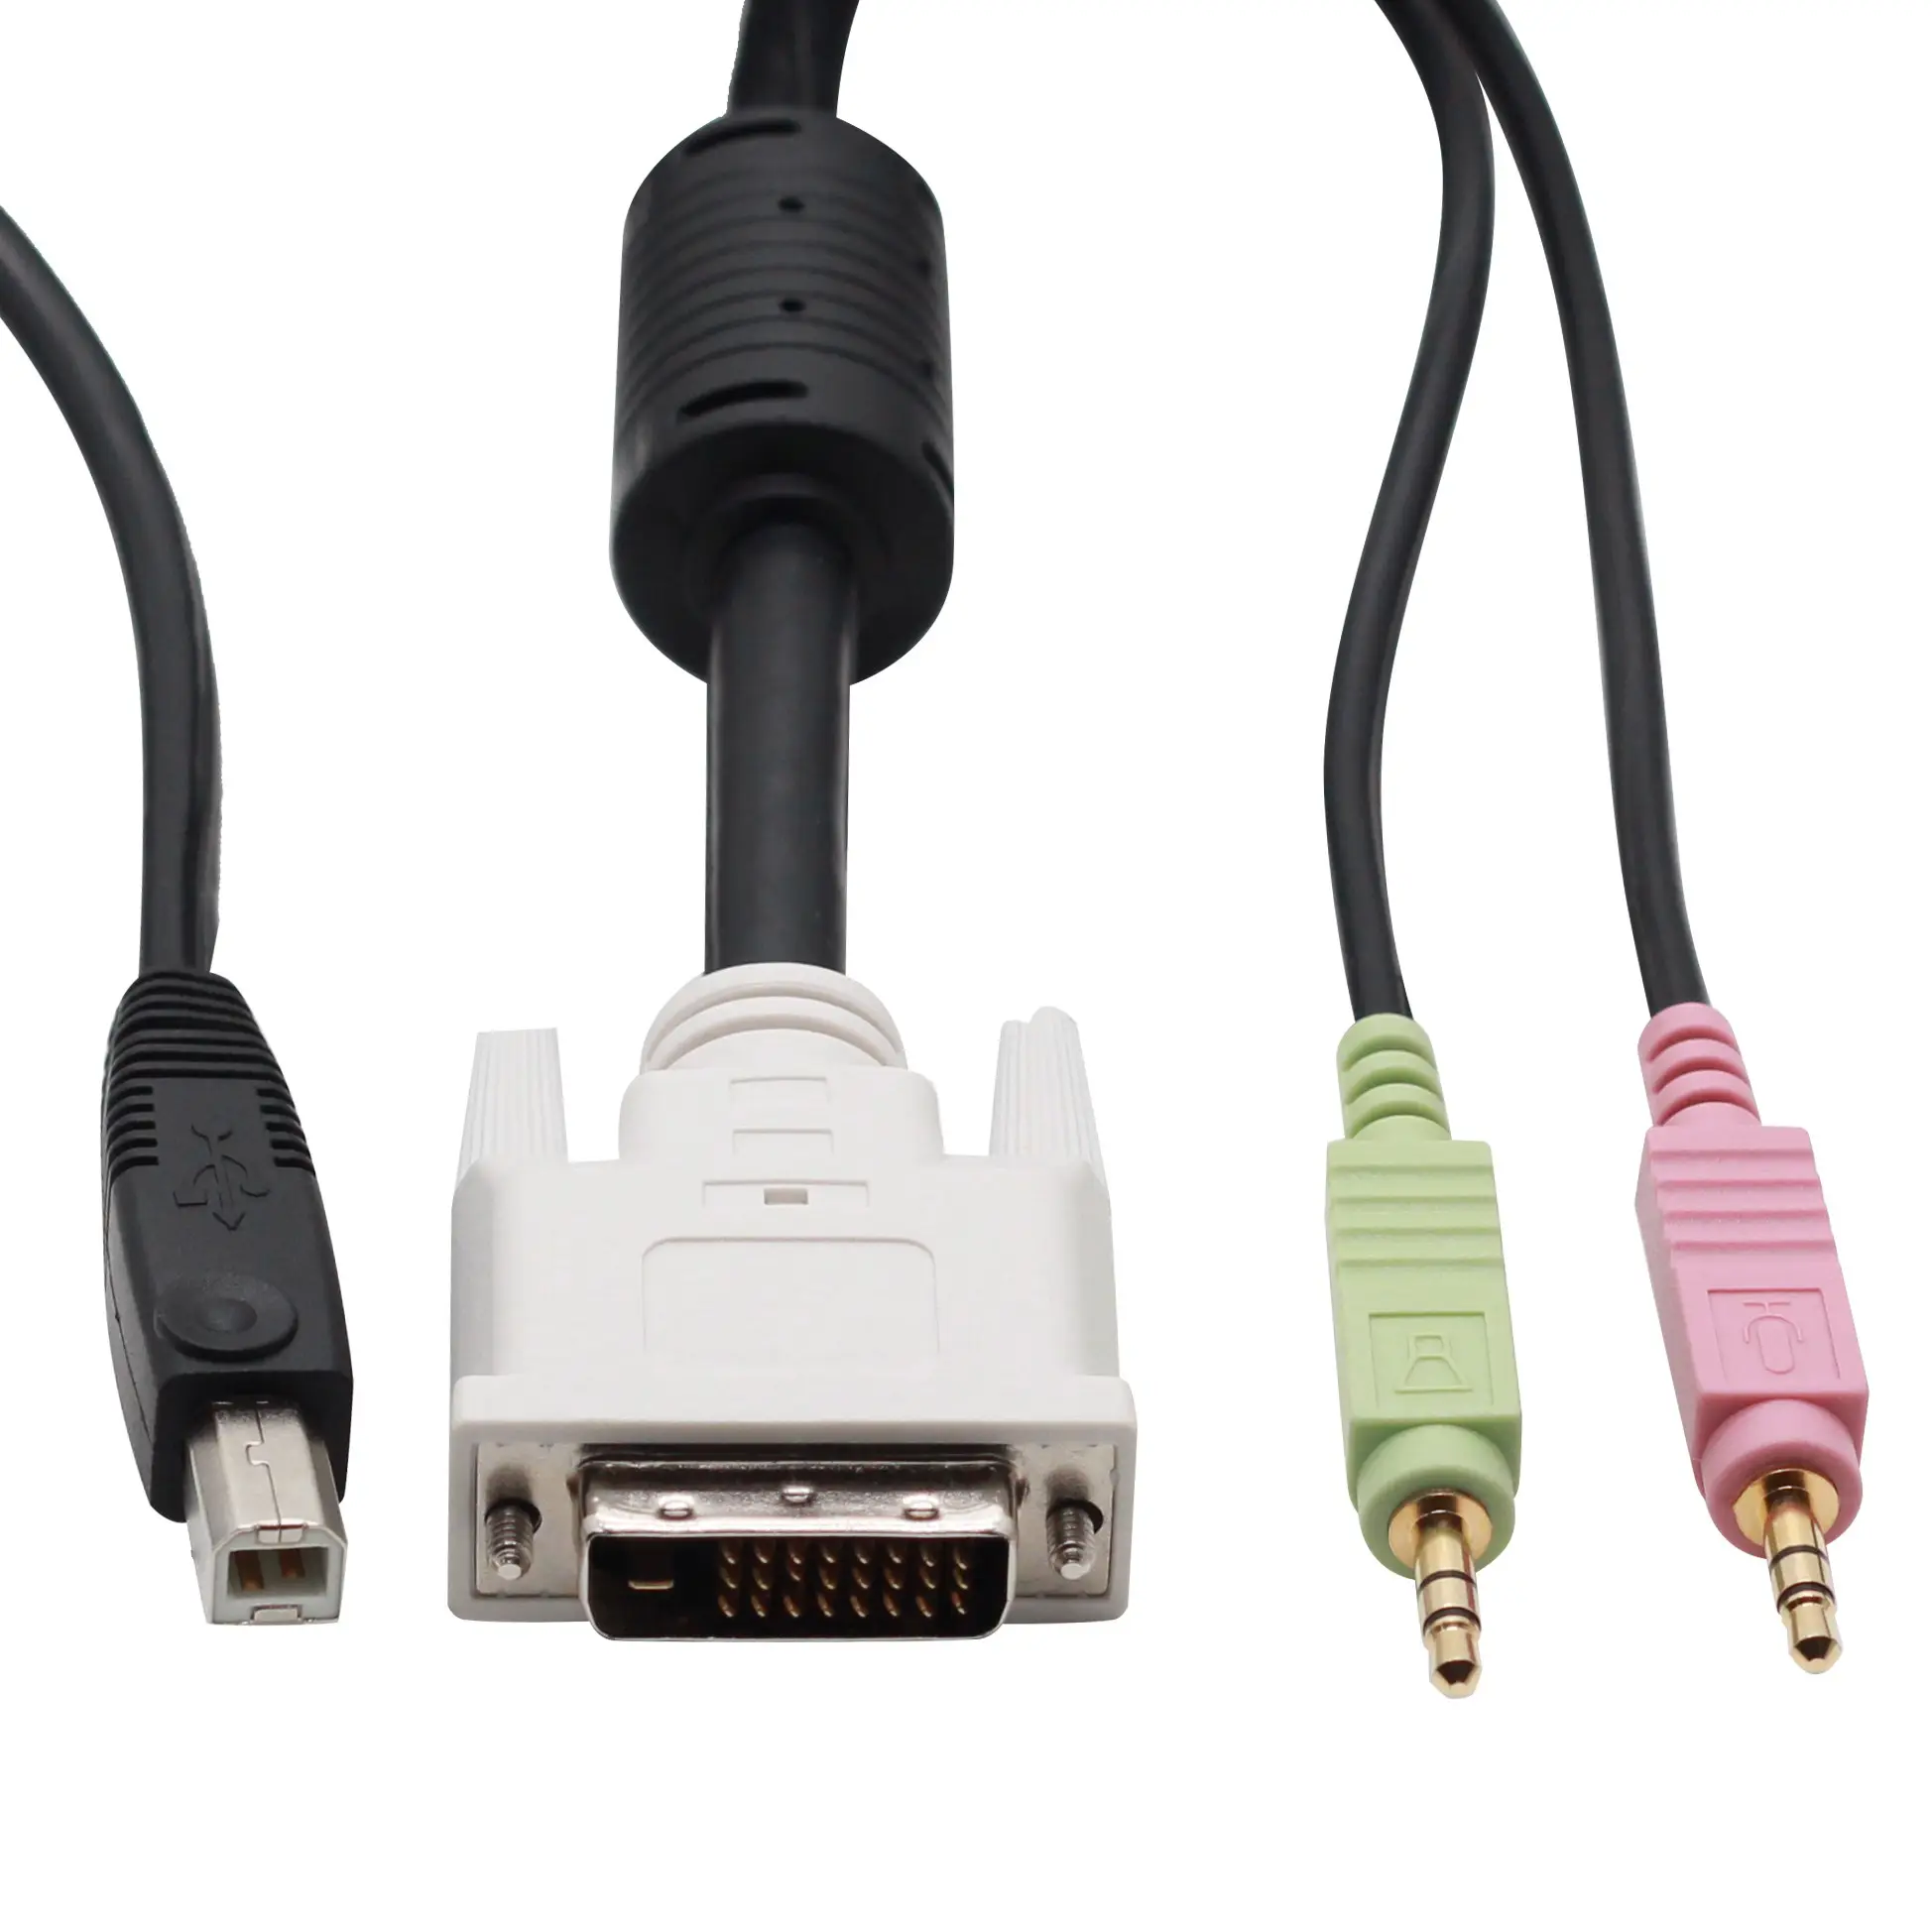 스피커 및 마이크가 있는 DVI 듀얼 링크 + USB 2.0 KVM 케이블, 블랙 4-IN-1 USB DVI KVM 케이블 (오디오 및 마이크 포함)